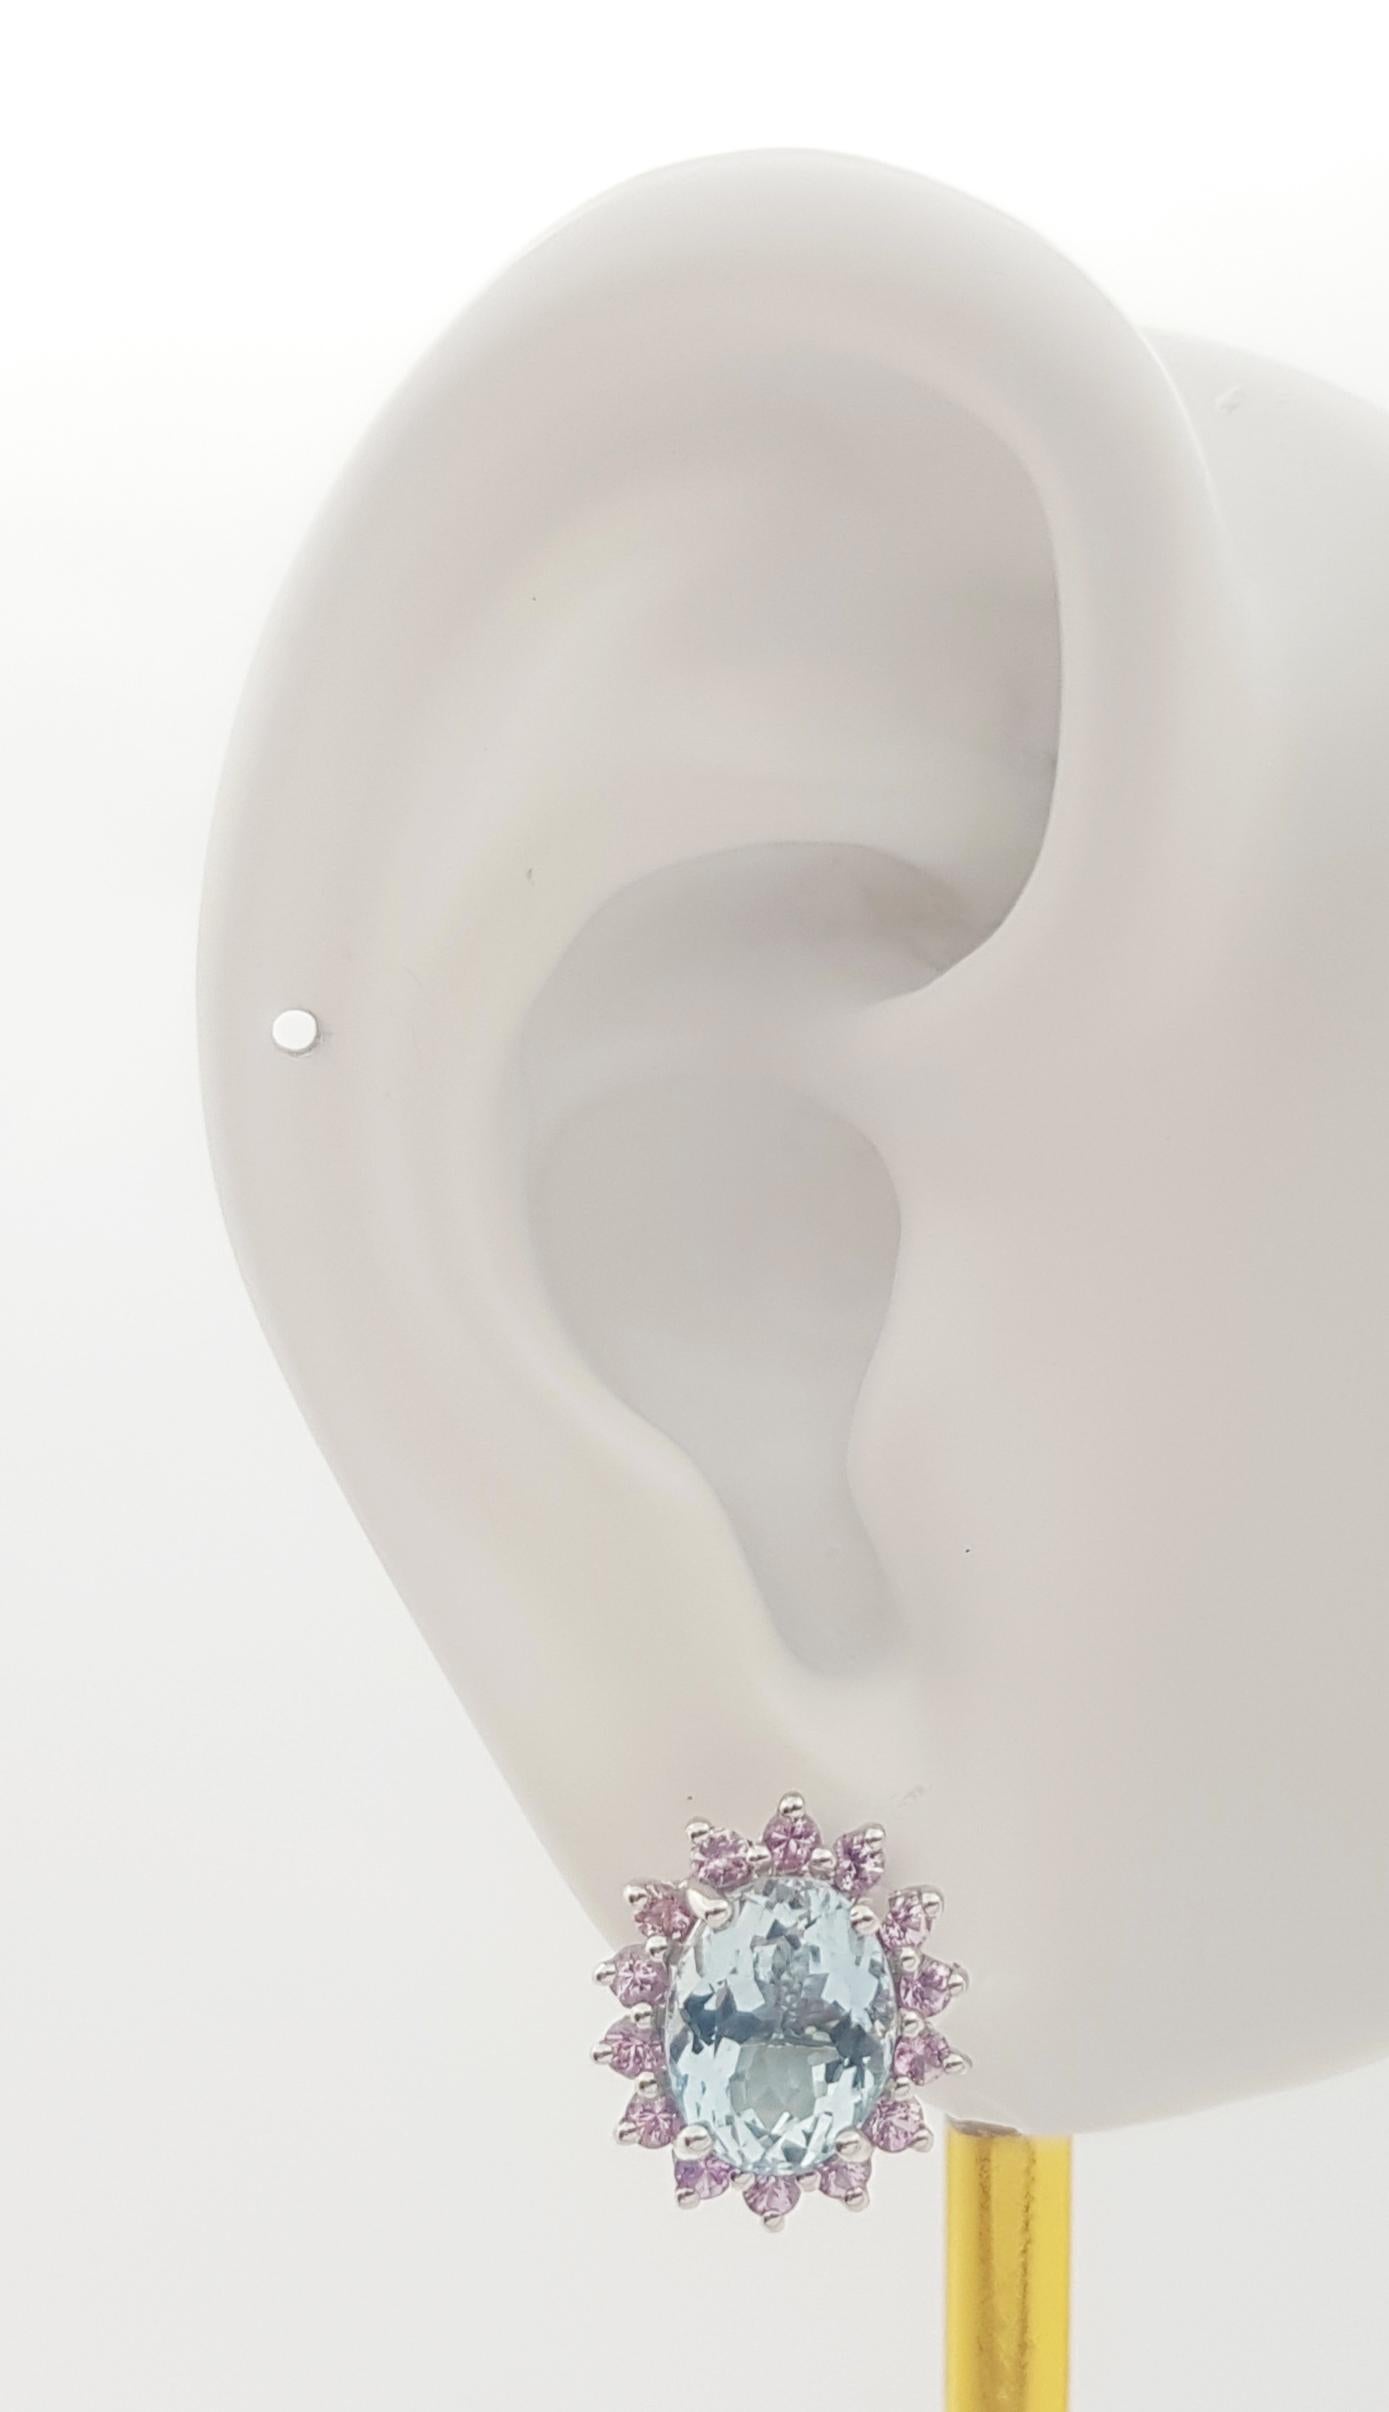 Boucles d'oreilles en or blanc 14K serties d'aigue-marine 3.52 carats et de saphir rose 0.87 carat

Largeur : 1.2 cm 
Longueur : 1.3 cm
Poids total : 6,32 grammes

